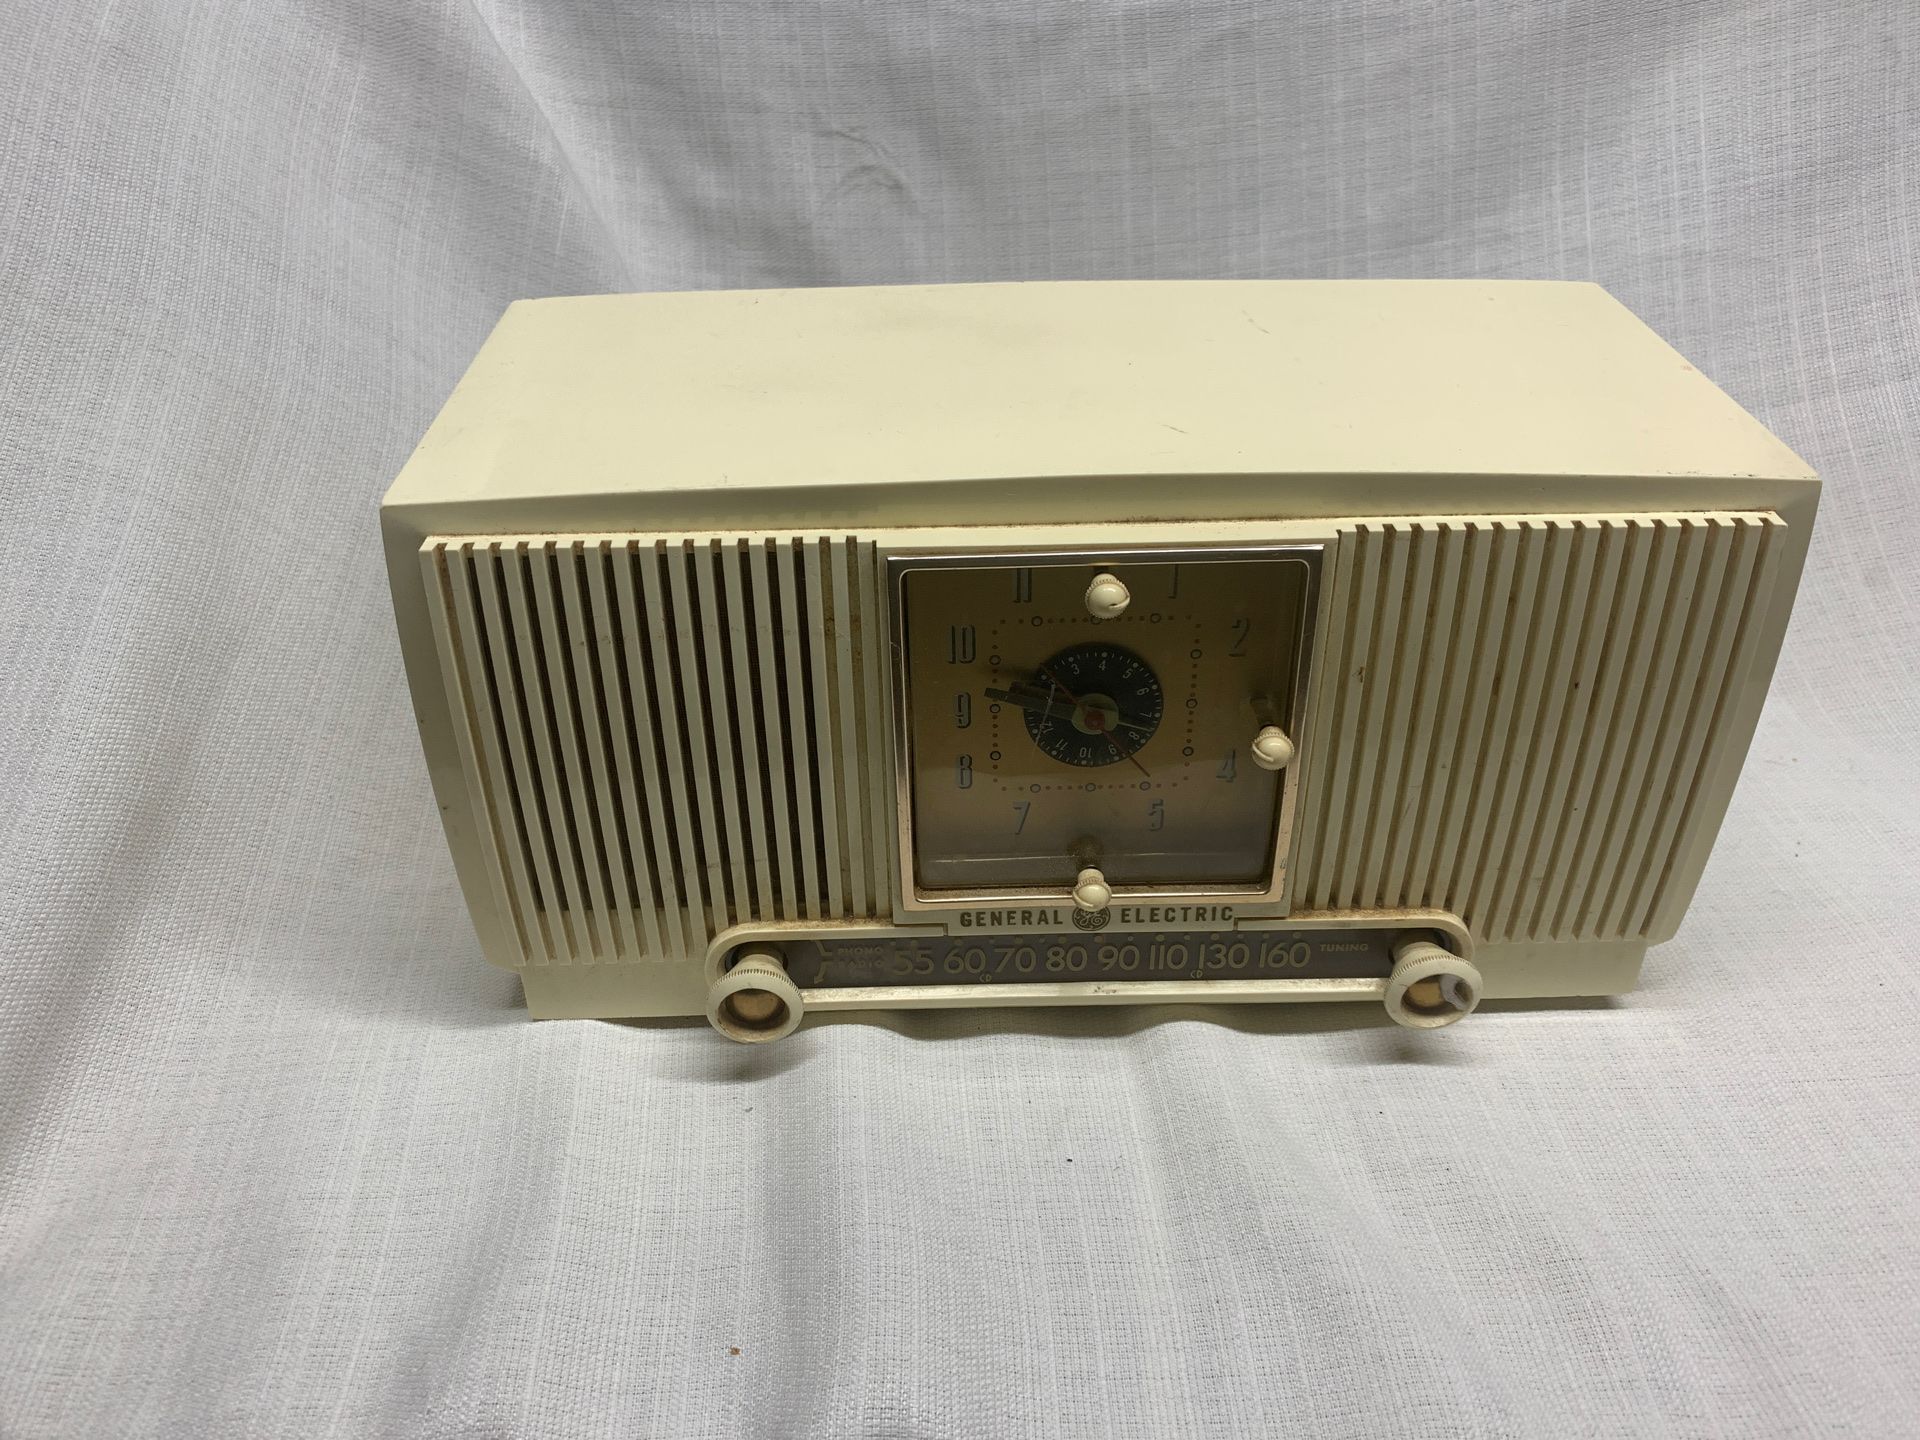 Antique clock radio General Electric